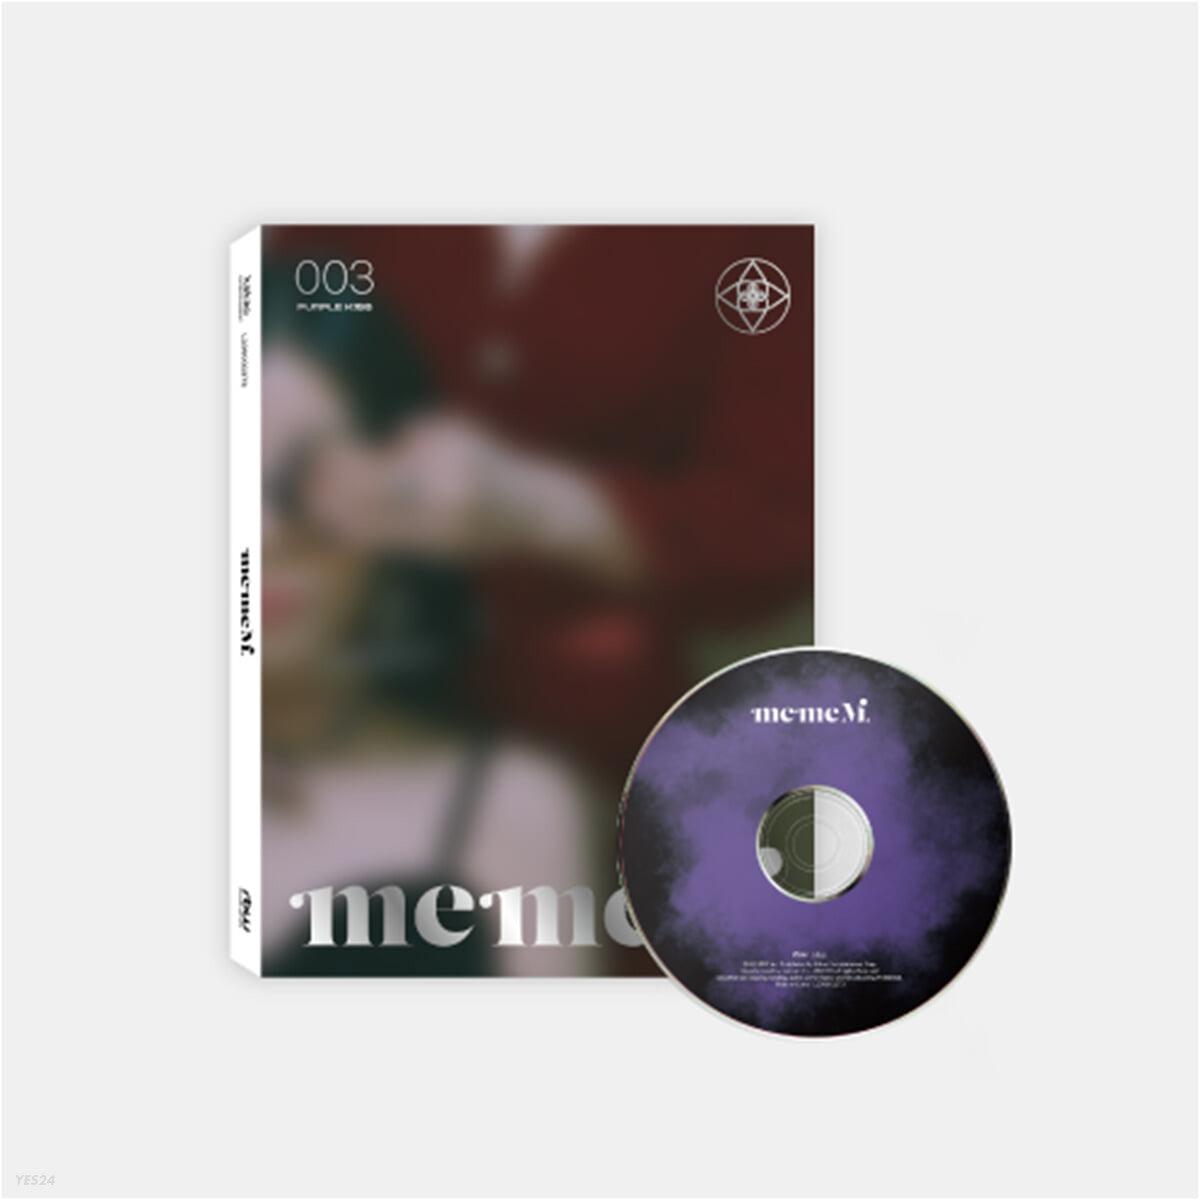 PURPLE KISS Mini Album Vol. 3 - MemeM - KKANG